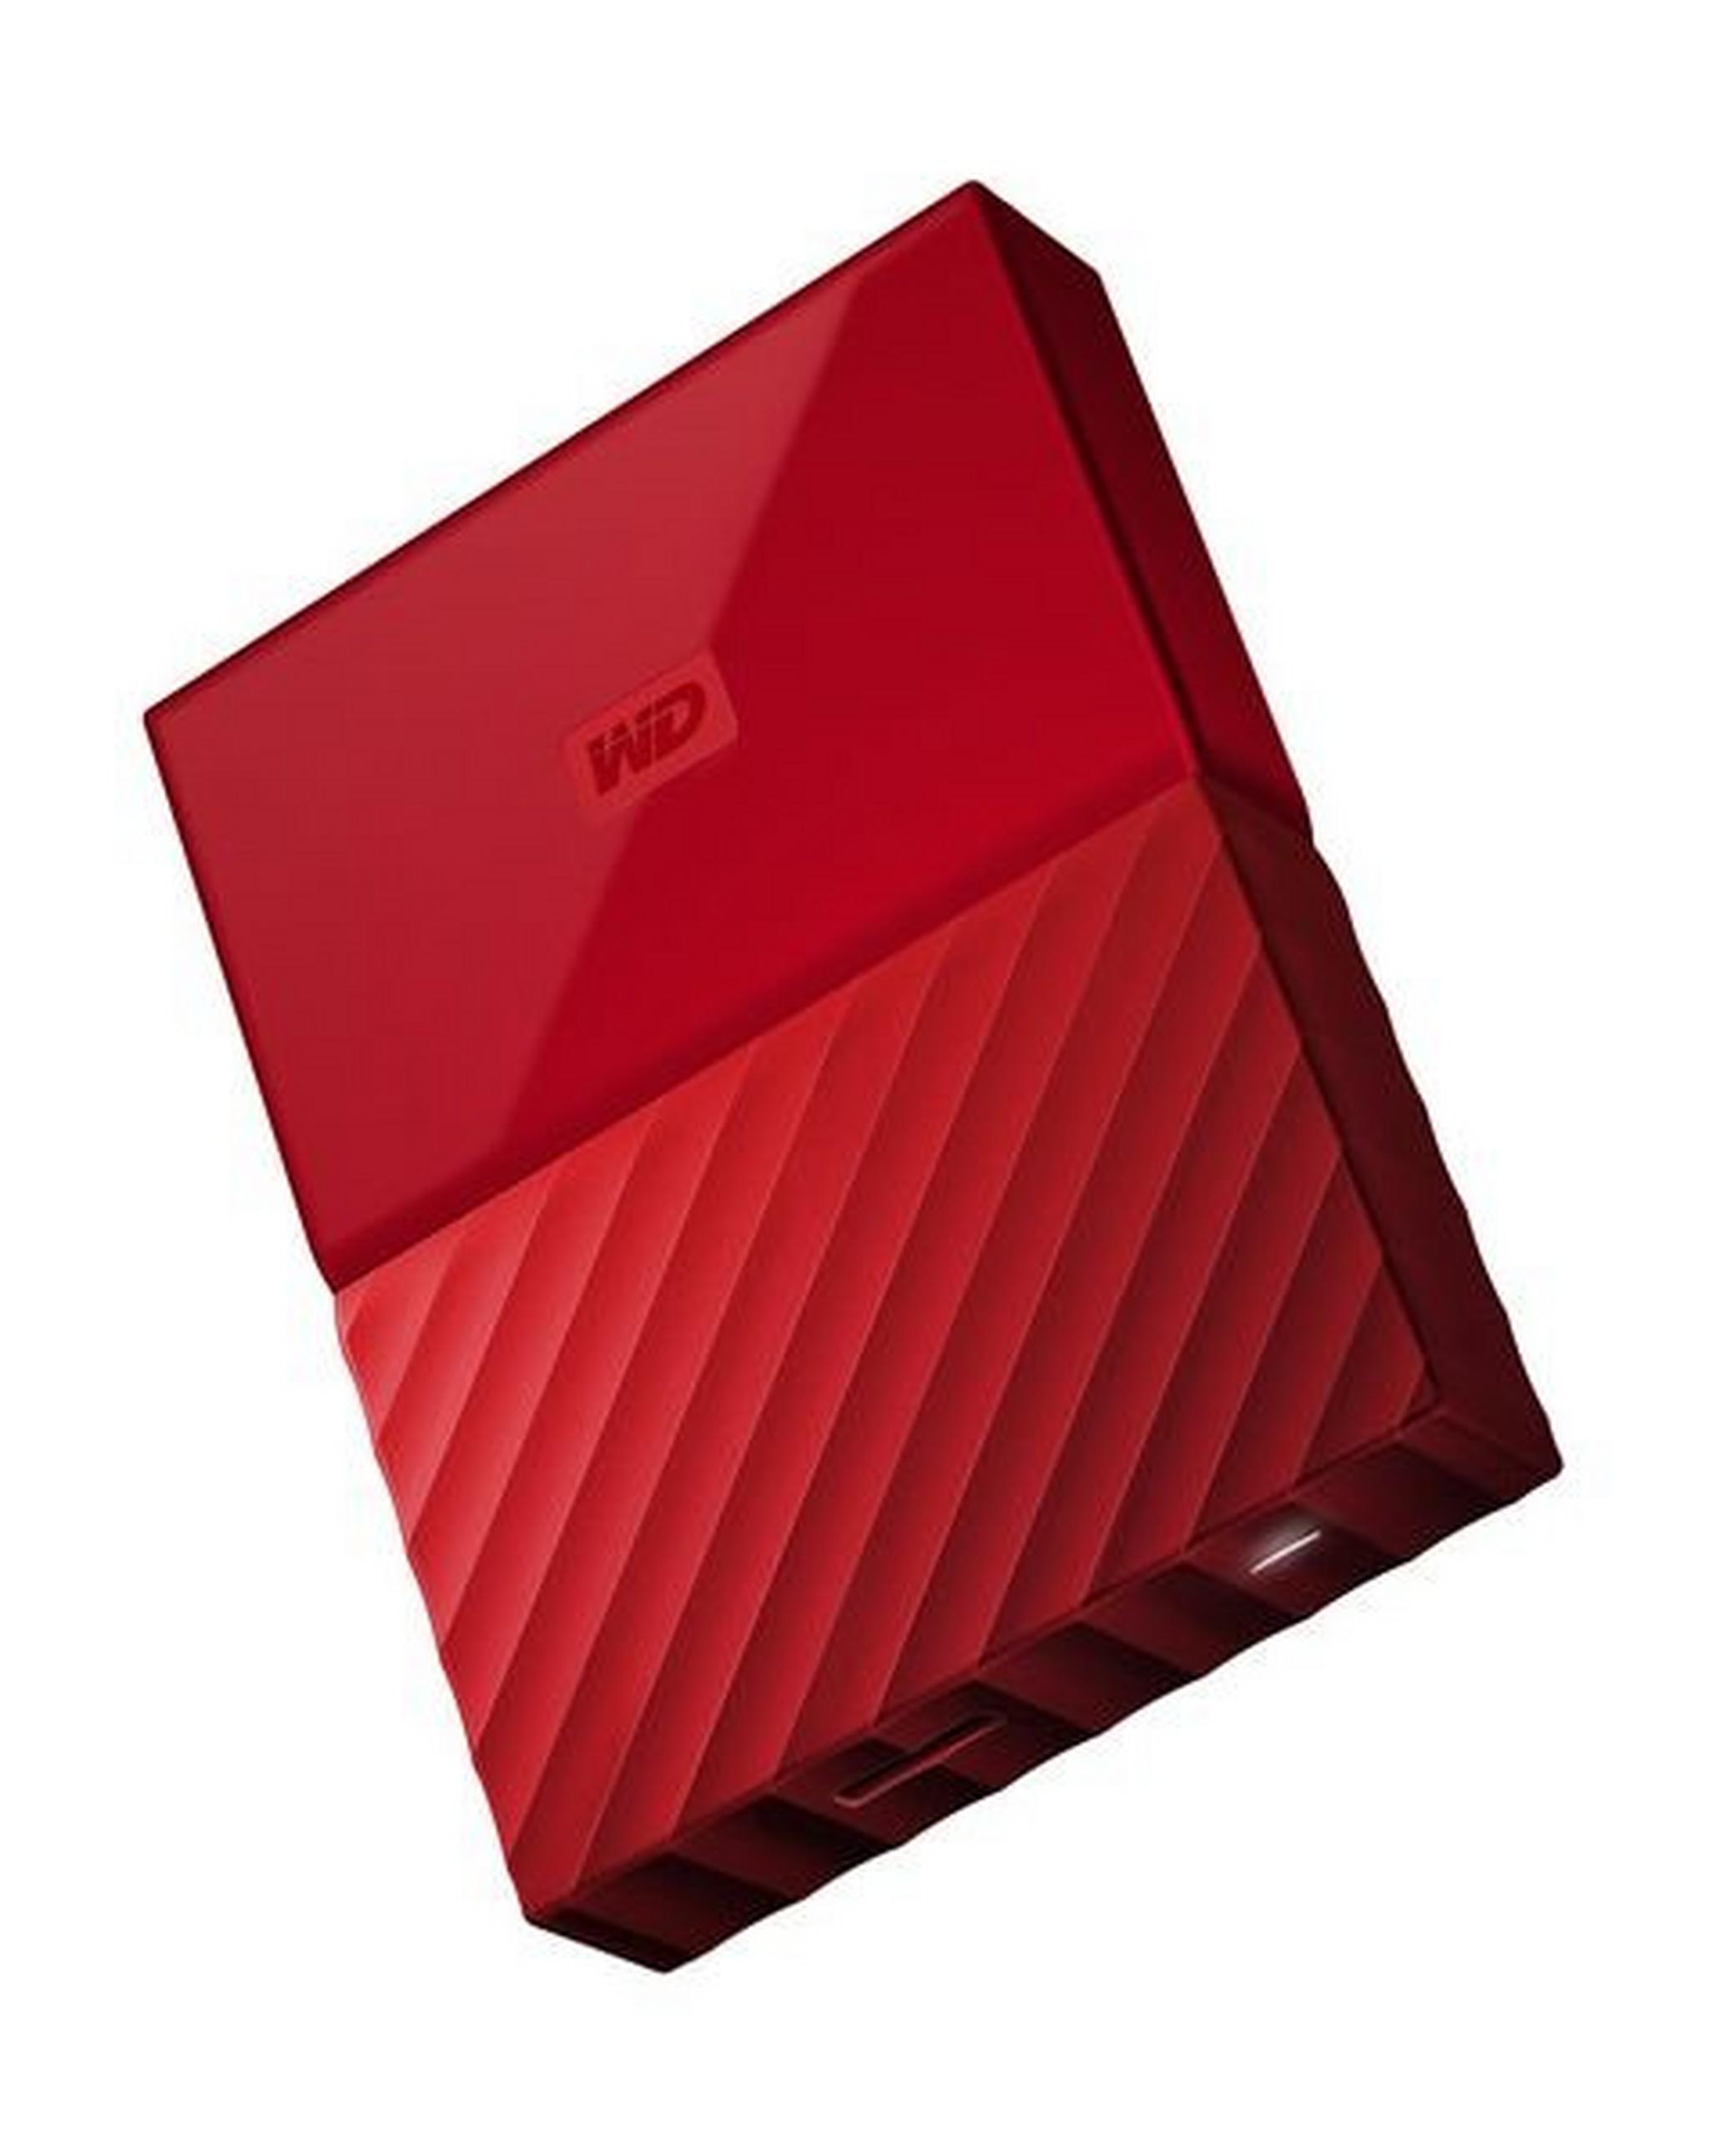 WD 4TB My Passport USB 3.0 External Hard Drive - Red